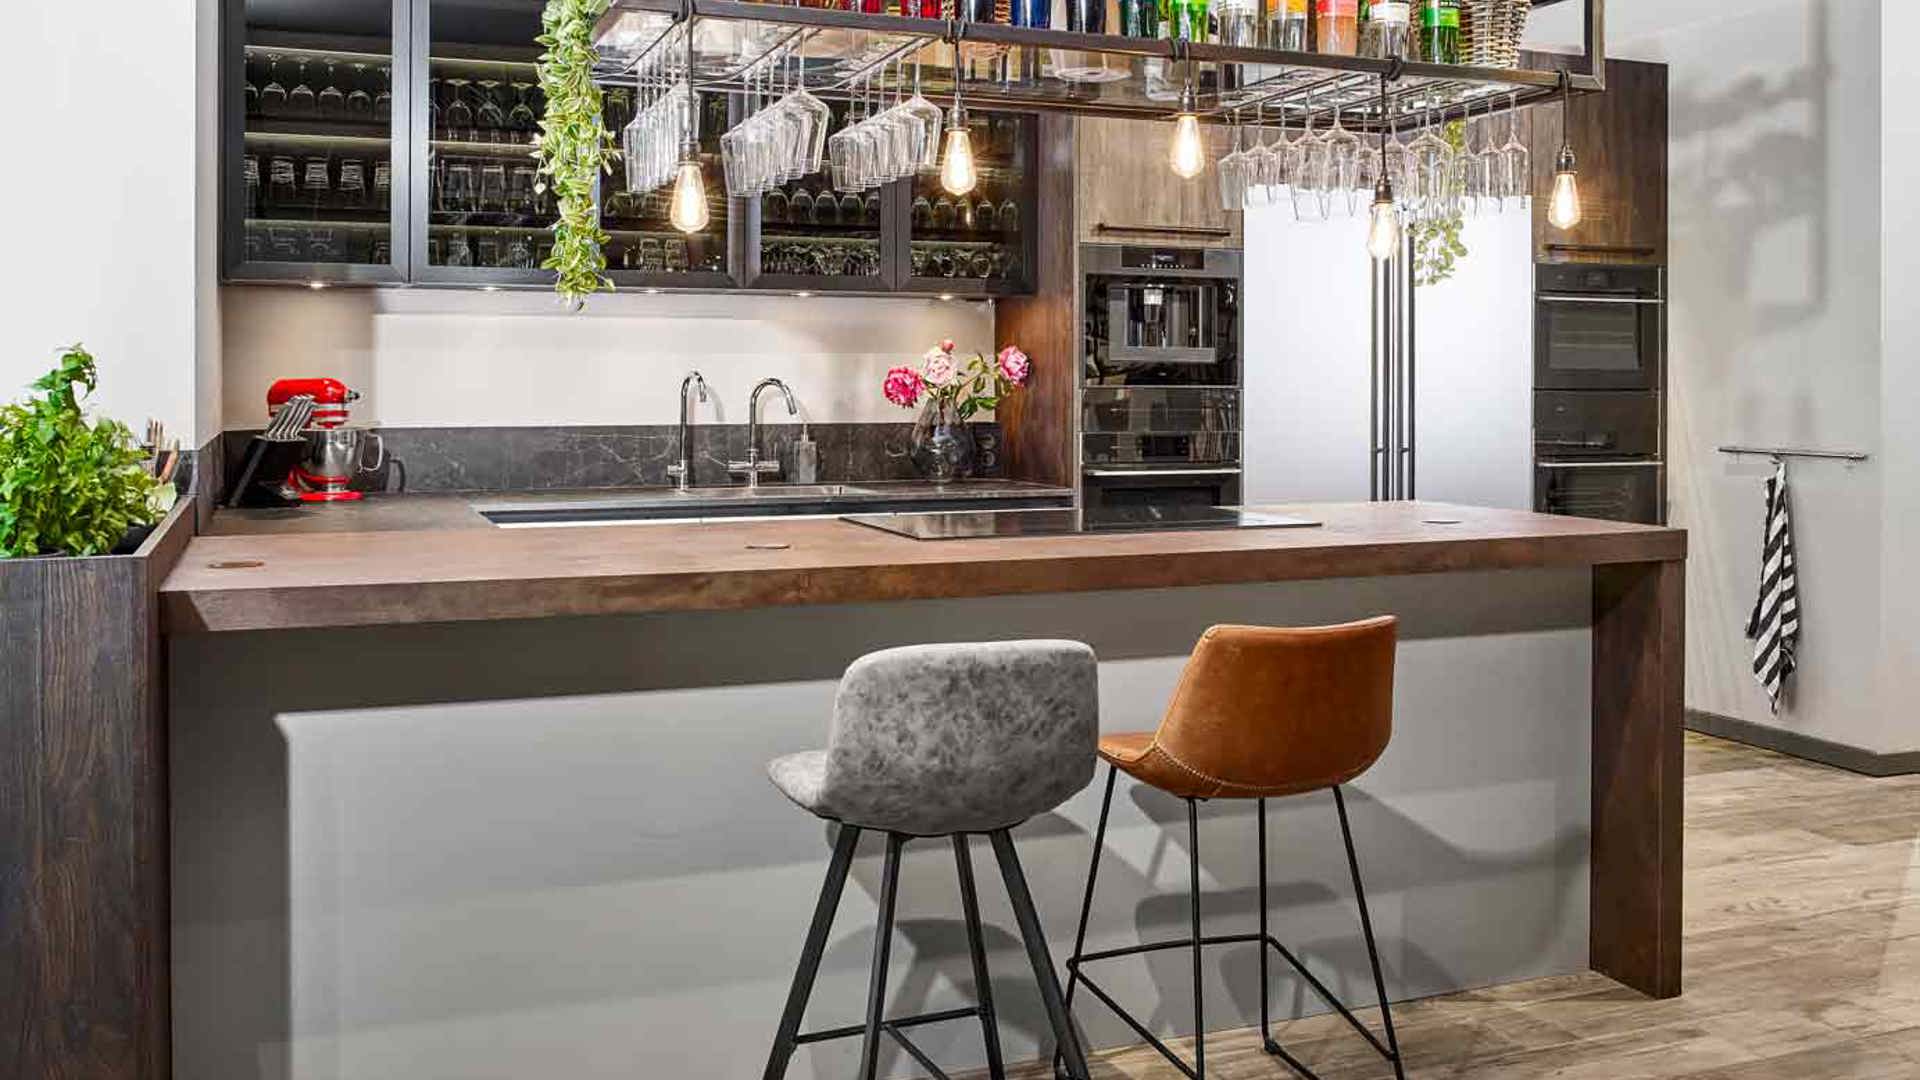 Chique keuken met bar en kastenwand, complete keuken met luxe uitstraling